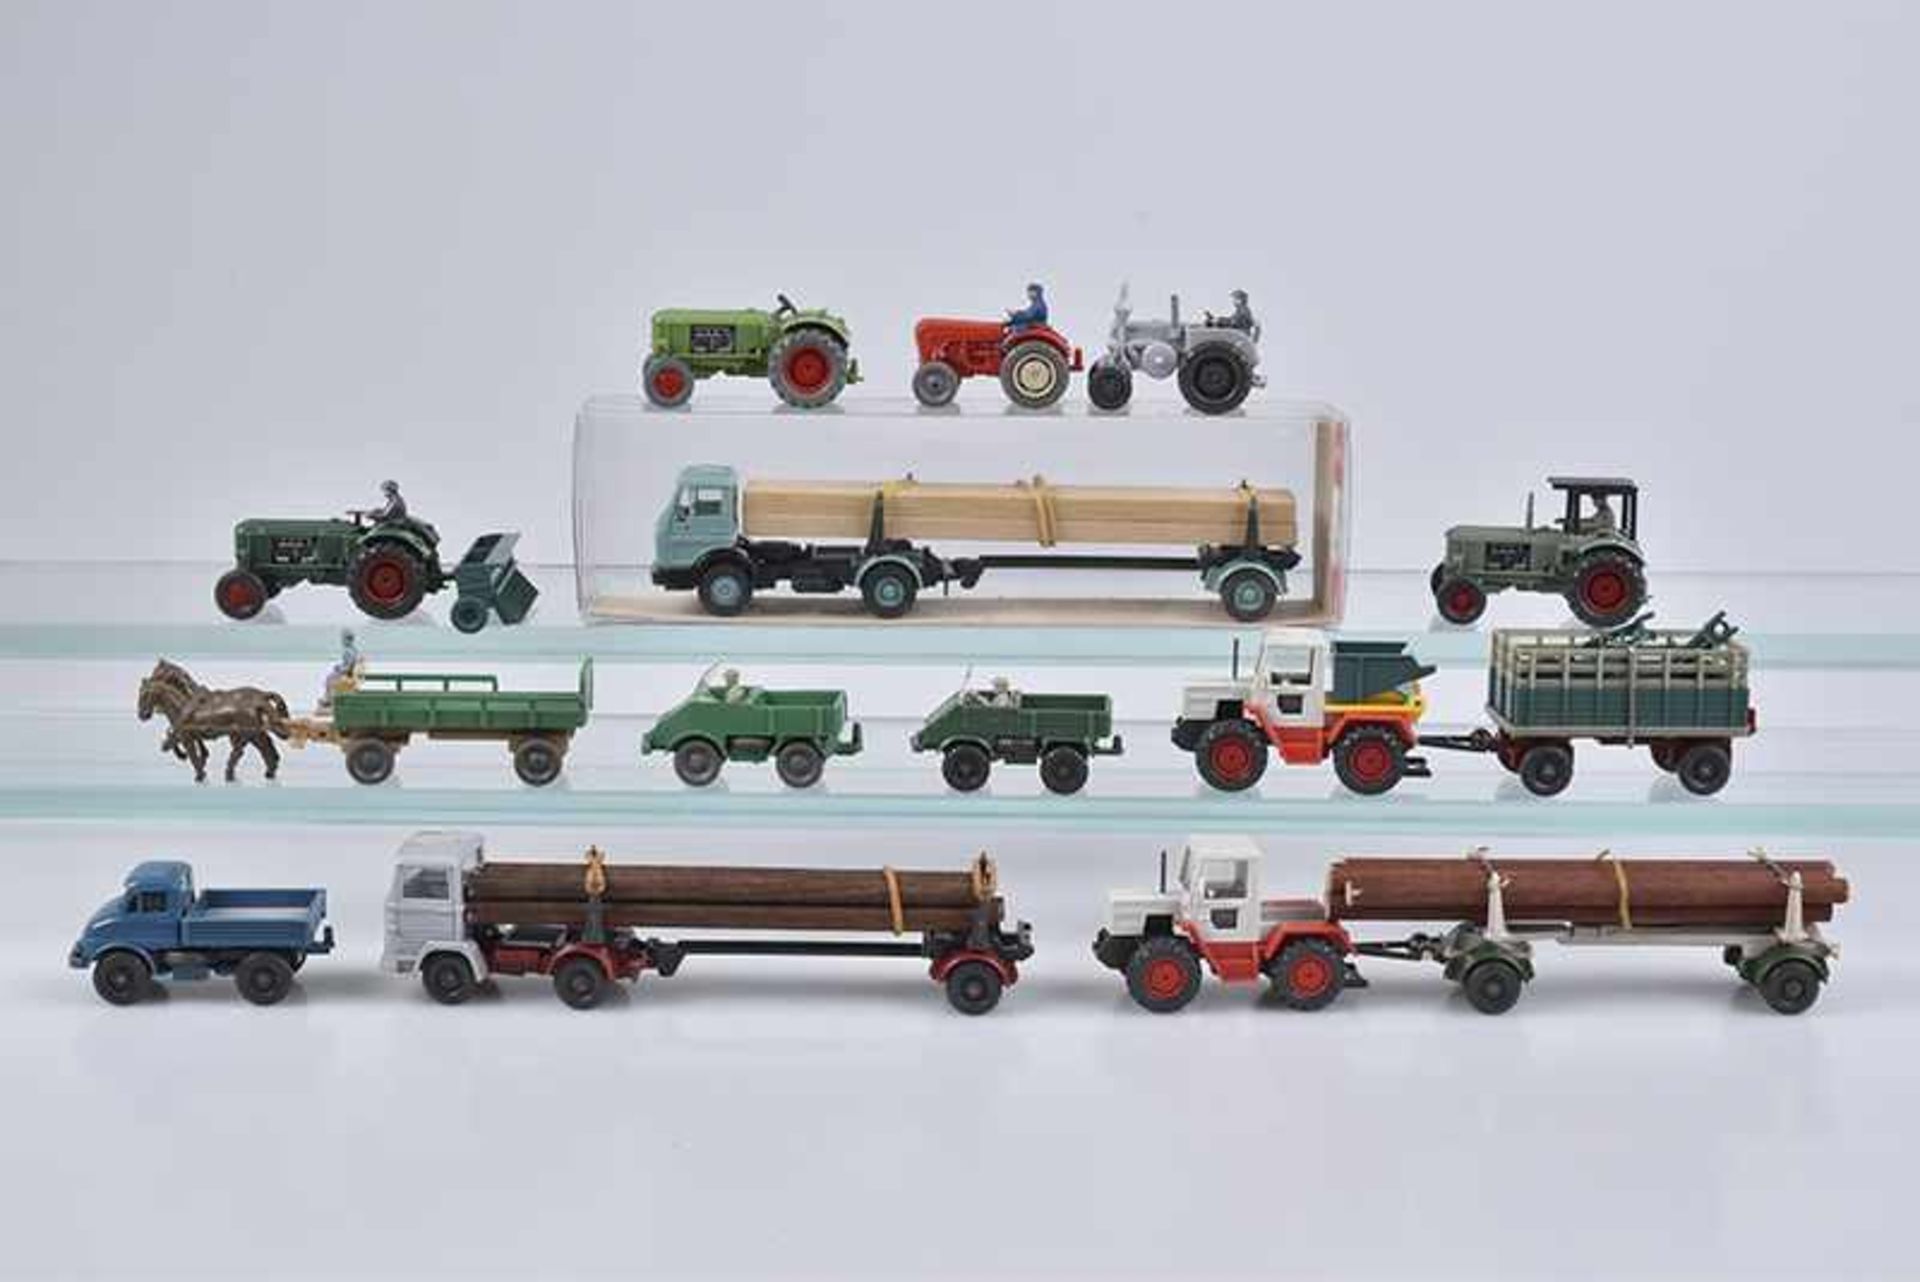 WIKING,13 Traktoren und Lastfahrzeuge, Hp, M 1:87, verglast, 60-80er Jahre, versch. Modelle darunter